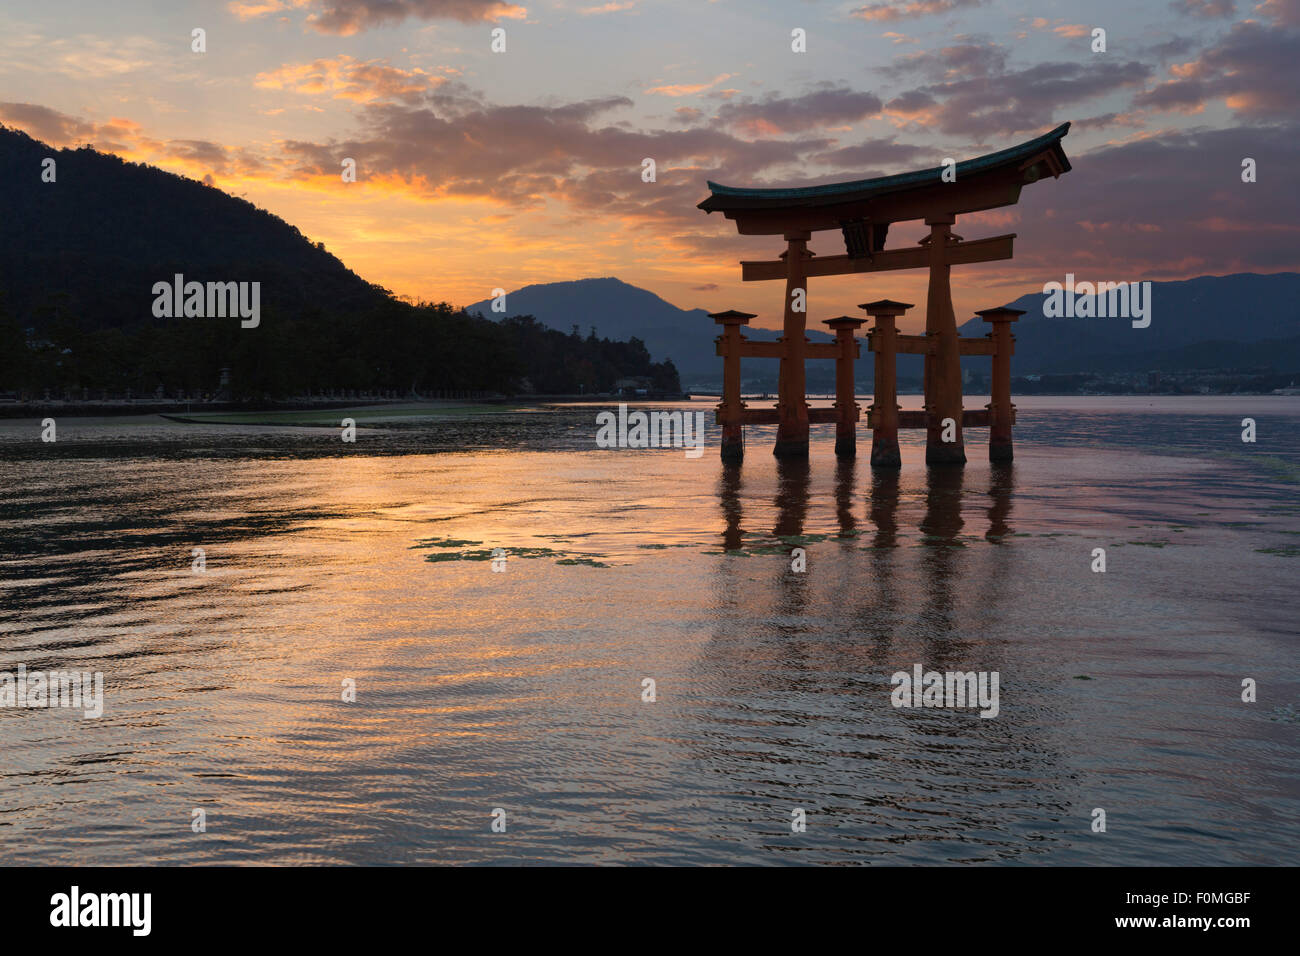 The floating Miyajima torii gate of Itsukushima Shrine at sunset, Miyajima Island, Western Honshu, Japan, Asia Stock Photo